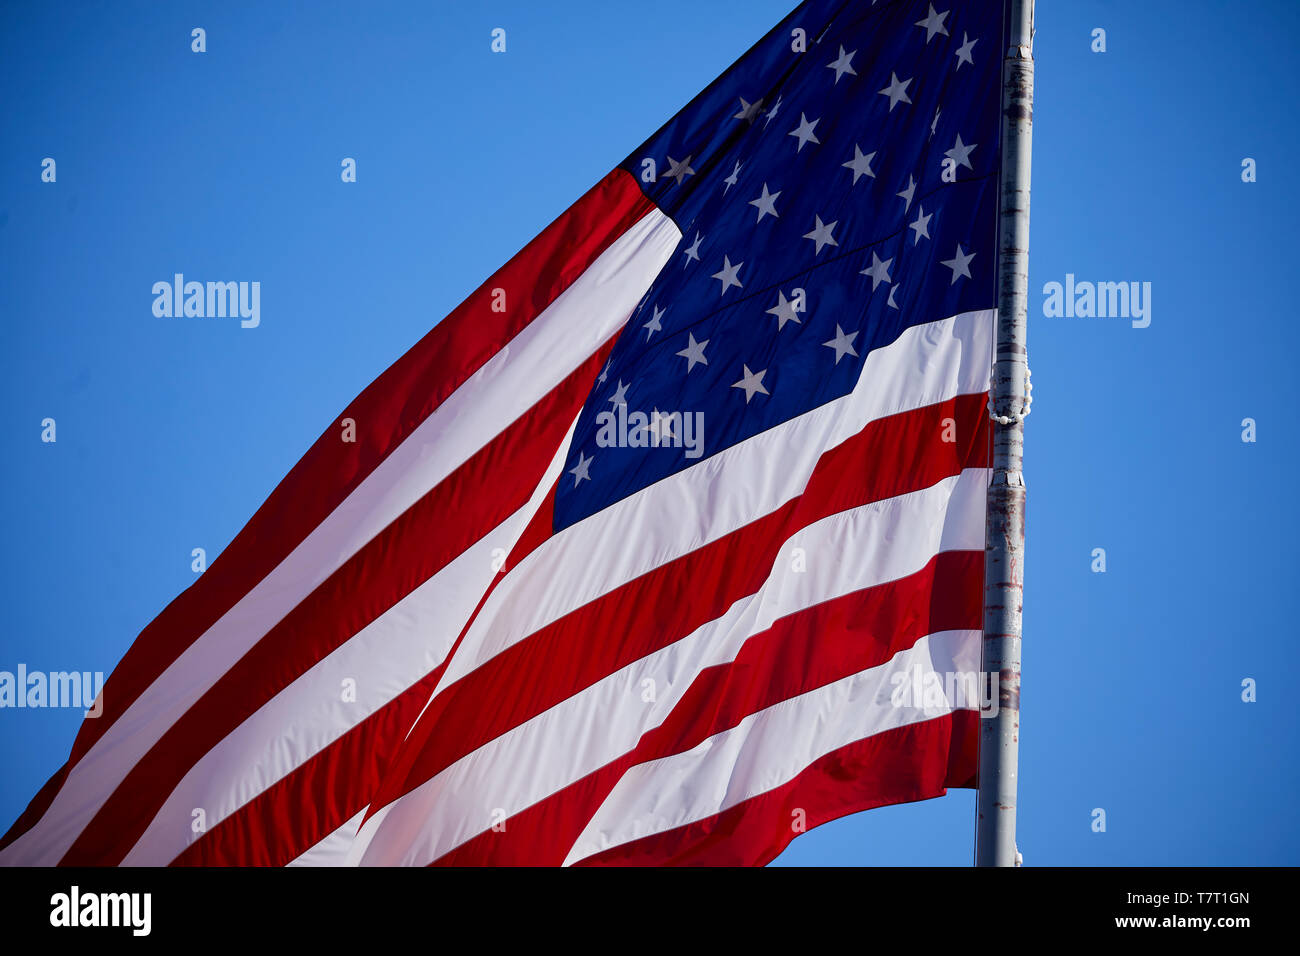 L'historique Route 66 city Williams, le drapeau américain, les Stars and Stripes, rouge, blanc et bleu ; ancienne gloire ; The Star-Spangled Banner ; US flag ; United S Banque D'Images